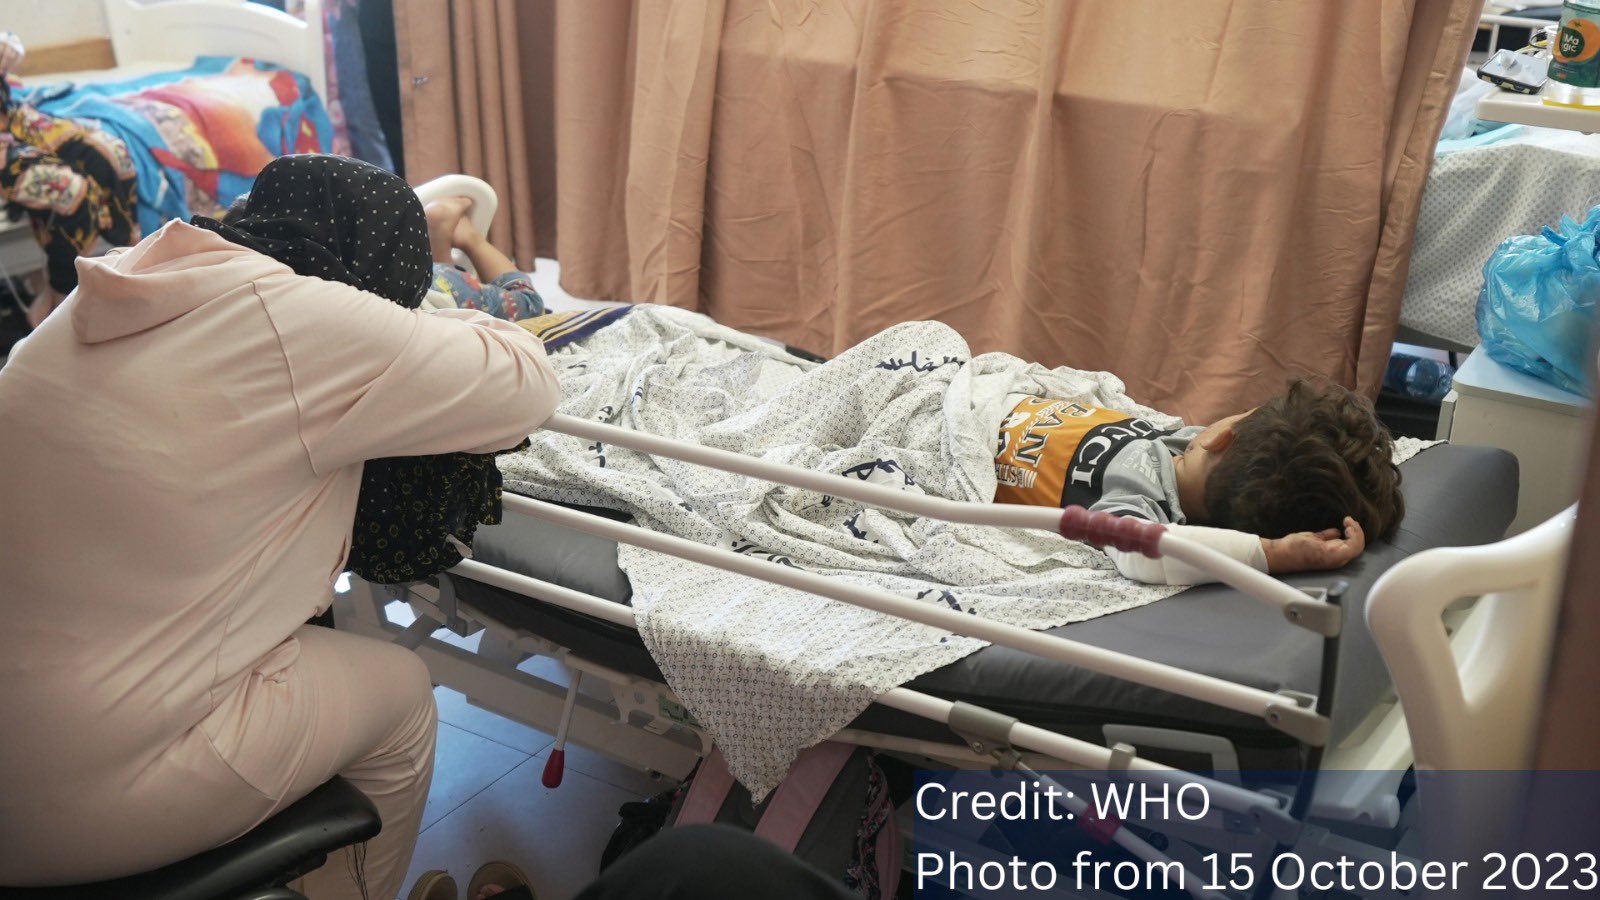 L’ospedale Al-Shifa di Gaza fuori servizio: morti almeno 6 neonati e altri 9 pazienti